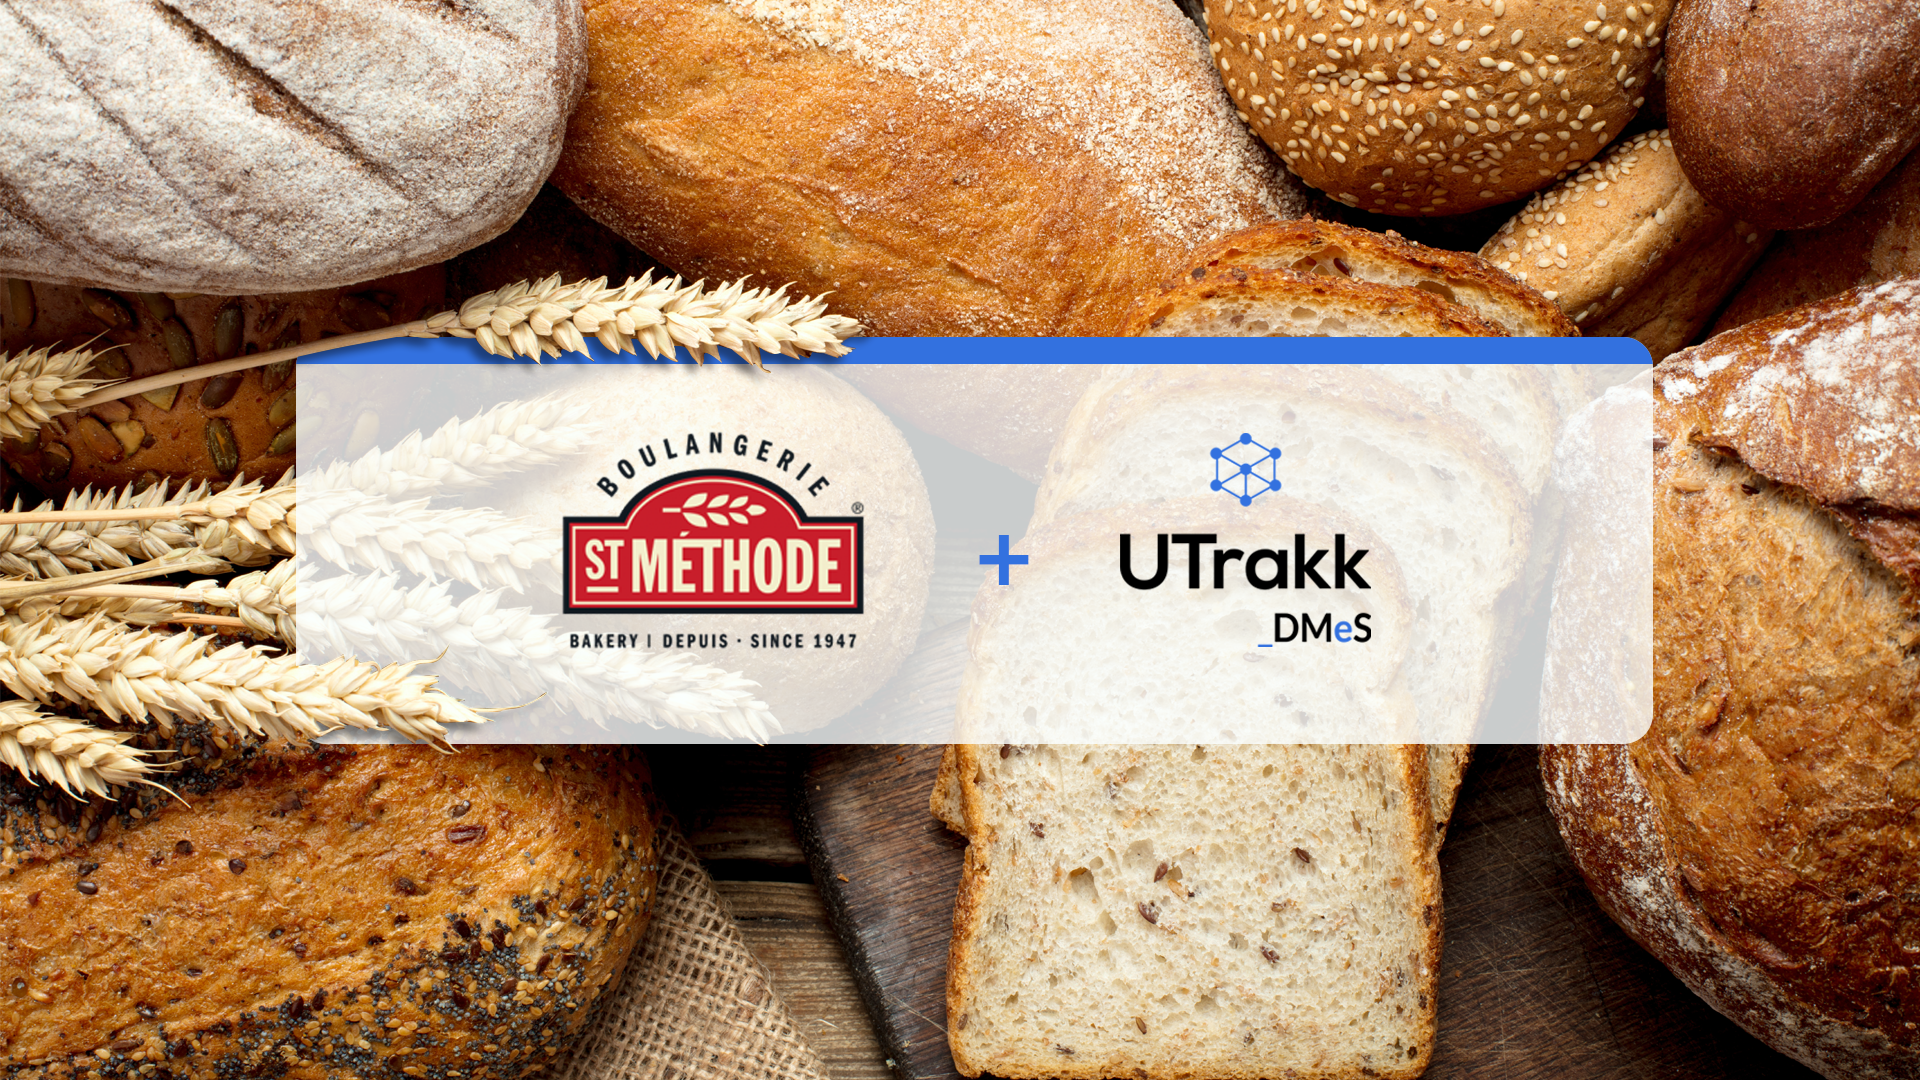 Comment la Boulangerie St-Méthode a digitalisé sa gestion et cultivé la collaboration avec UTrakk